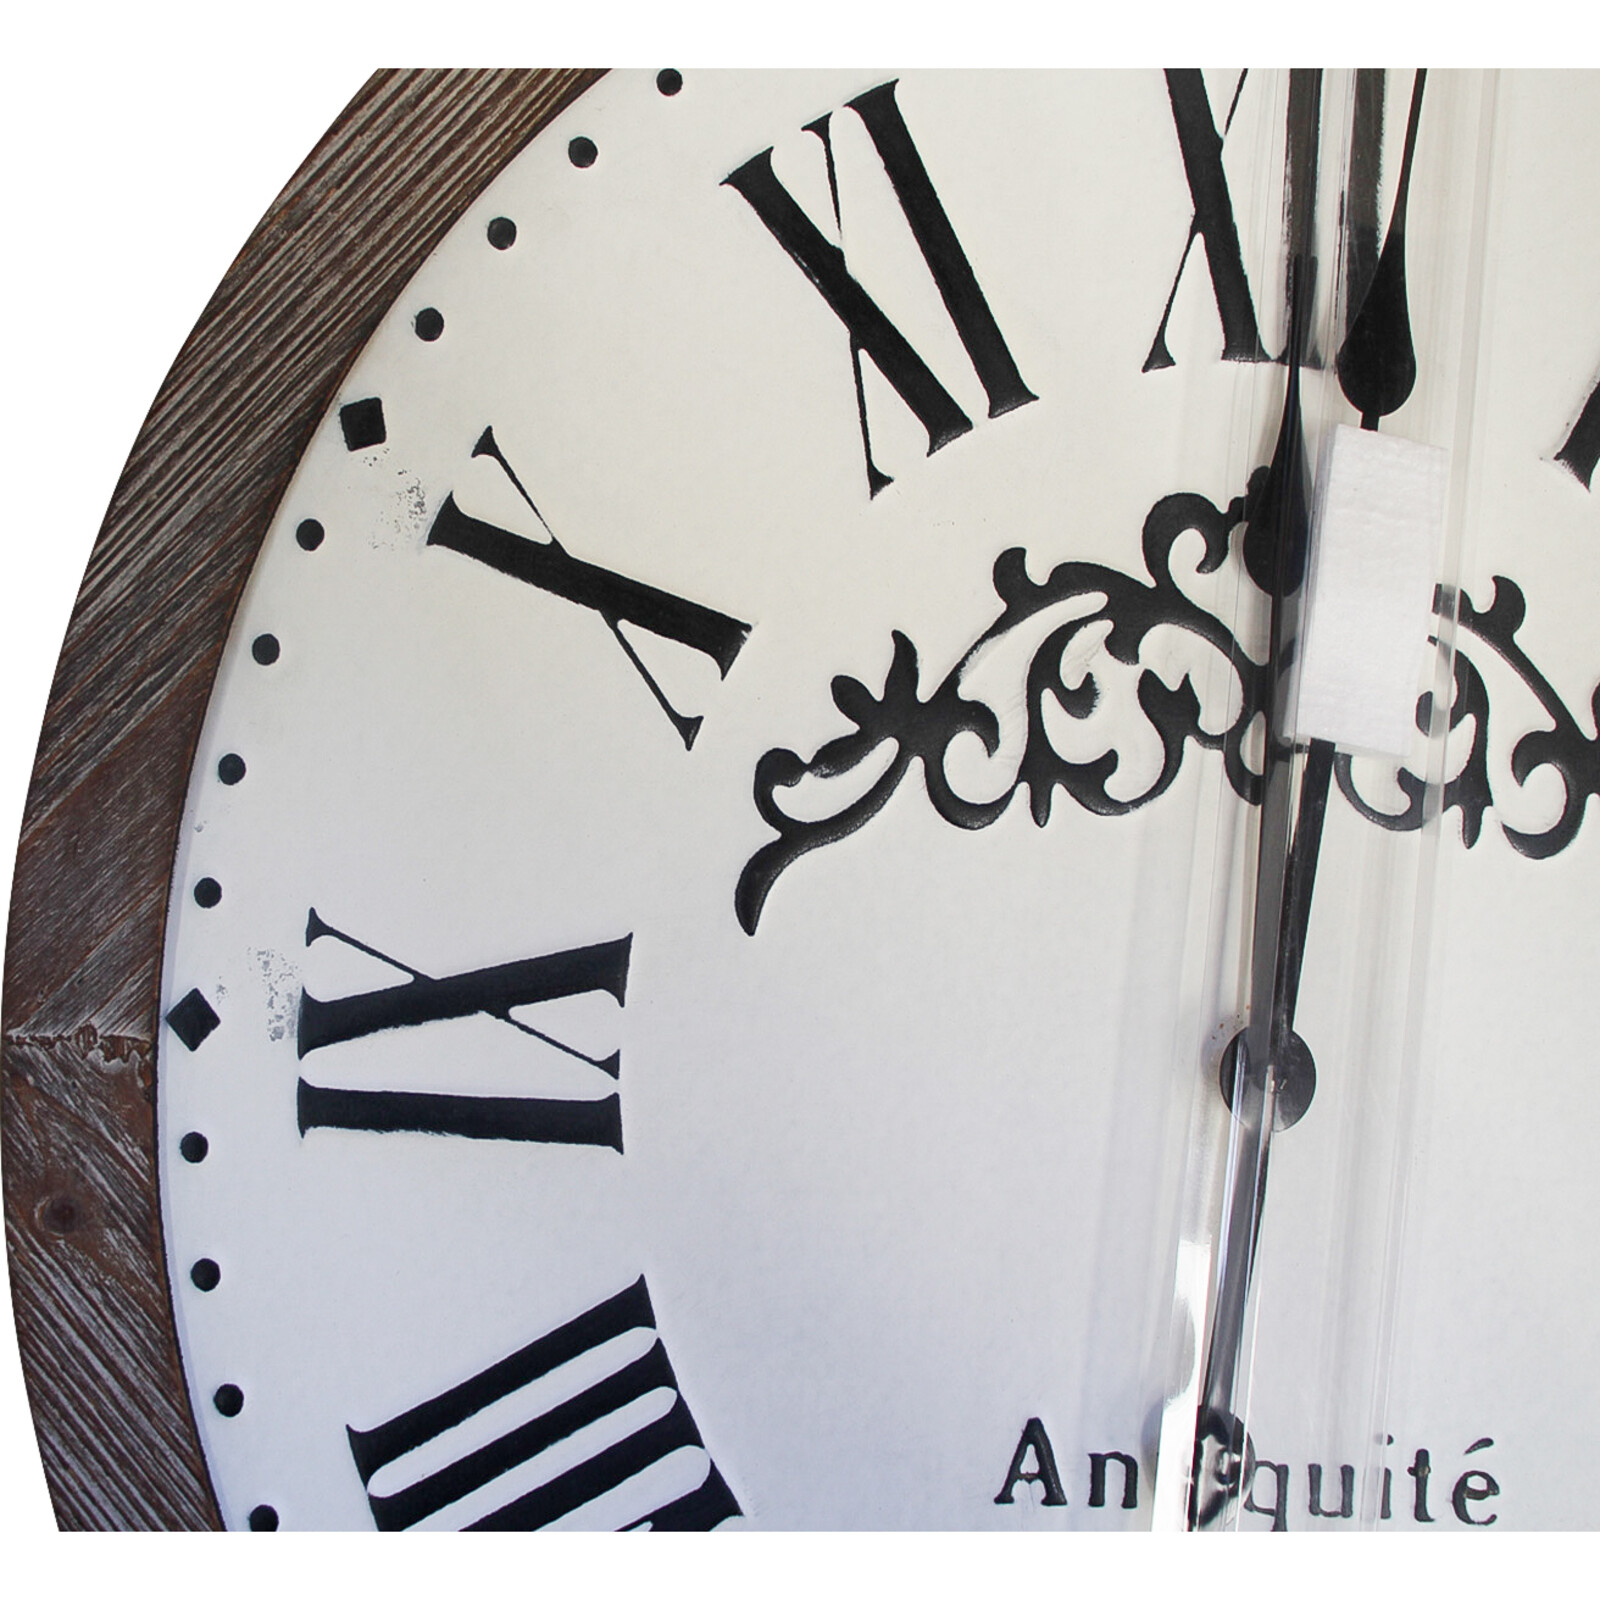 Clock Antiquite' De Paris Roman Black 63cm 